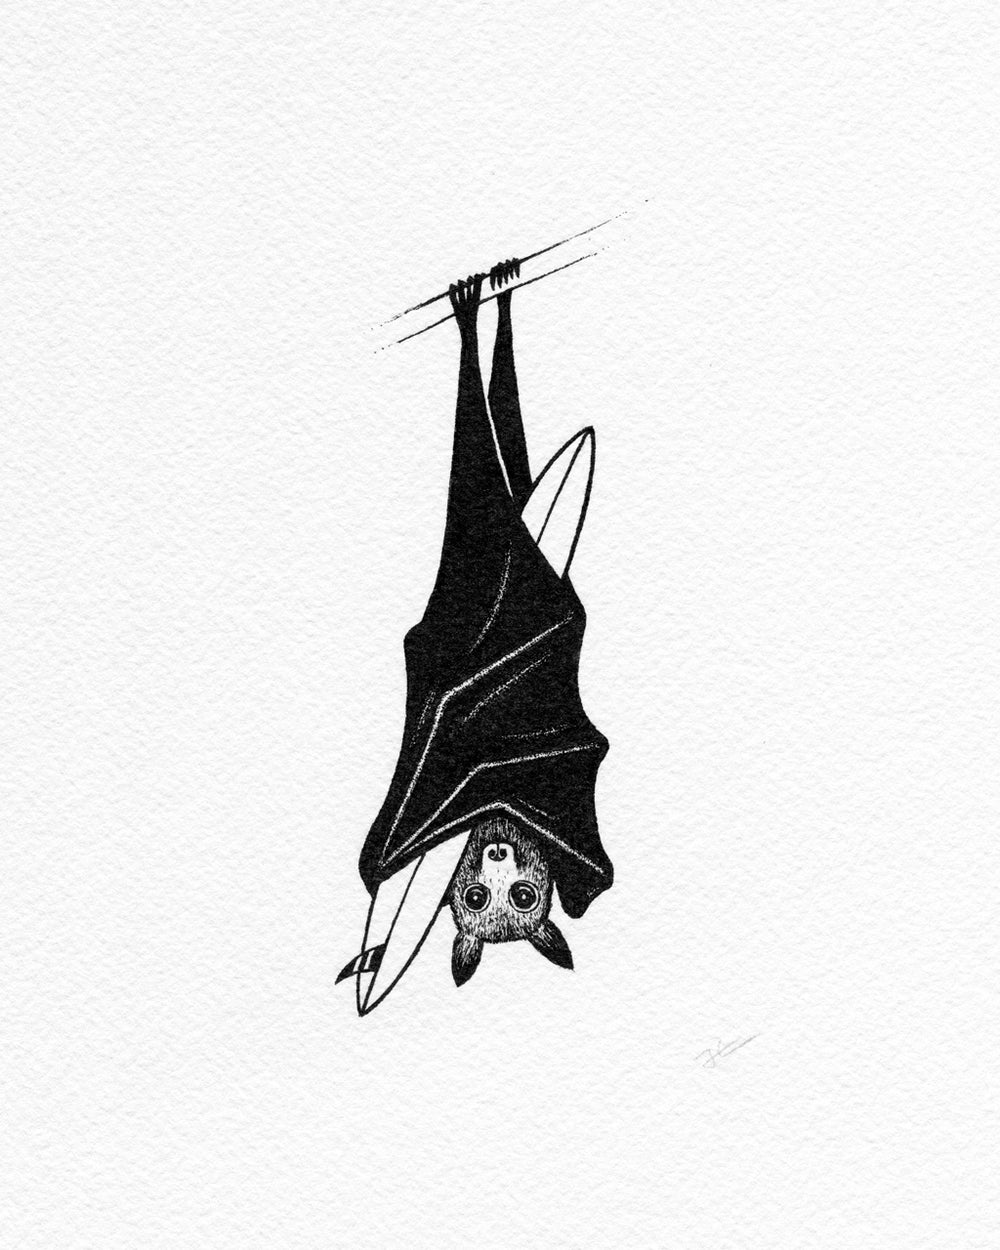 Inktober Bat. Original illustration - SOLD OUT